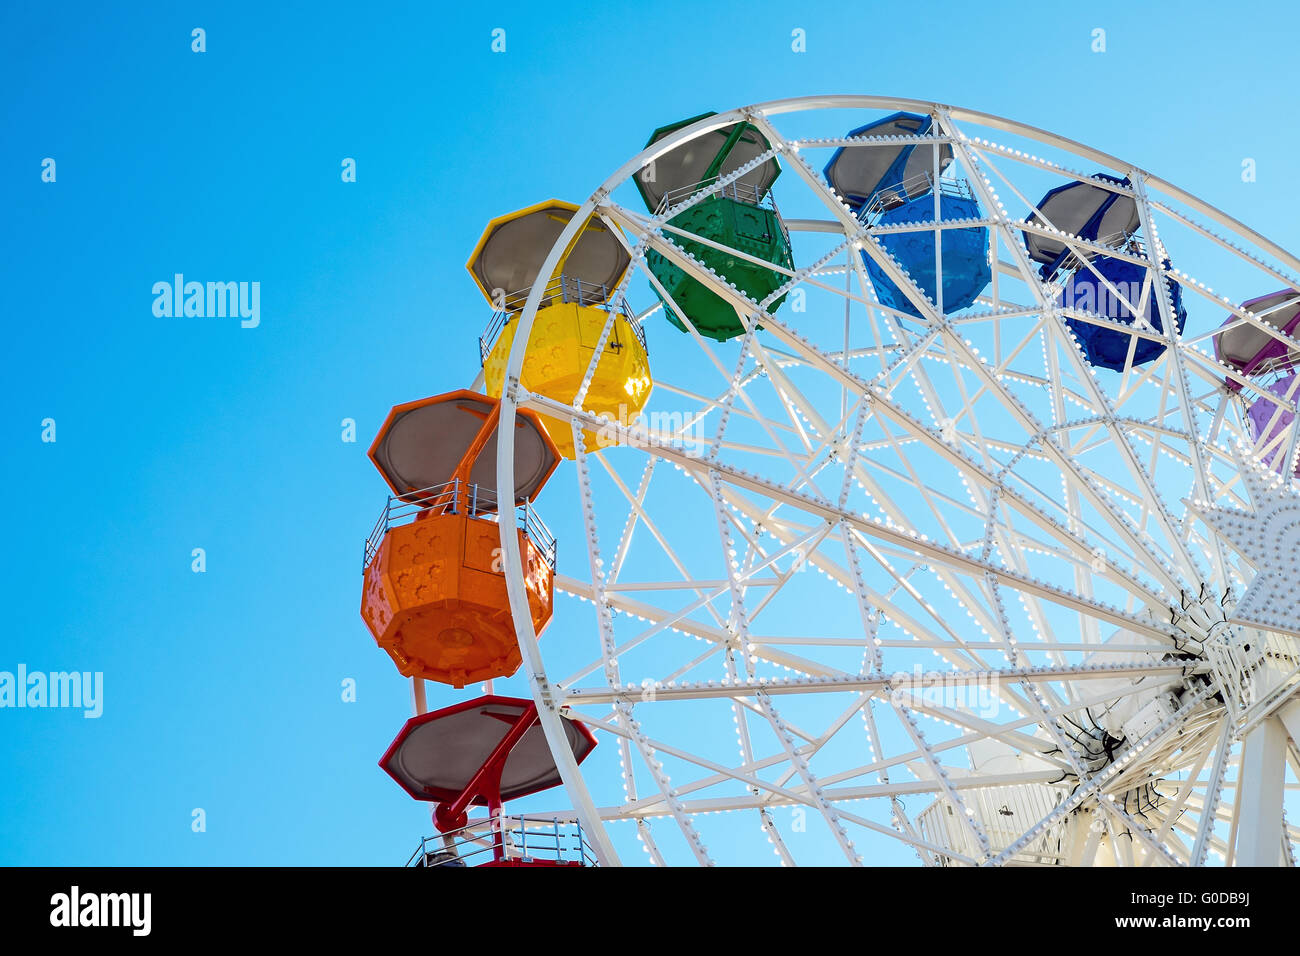 Dettaglio di un colorato ruota panoramica Ferris visto ad una fiera Foto Stock